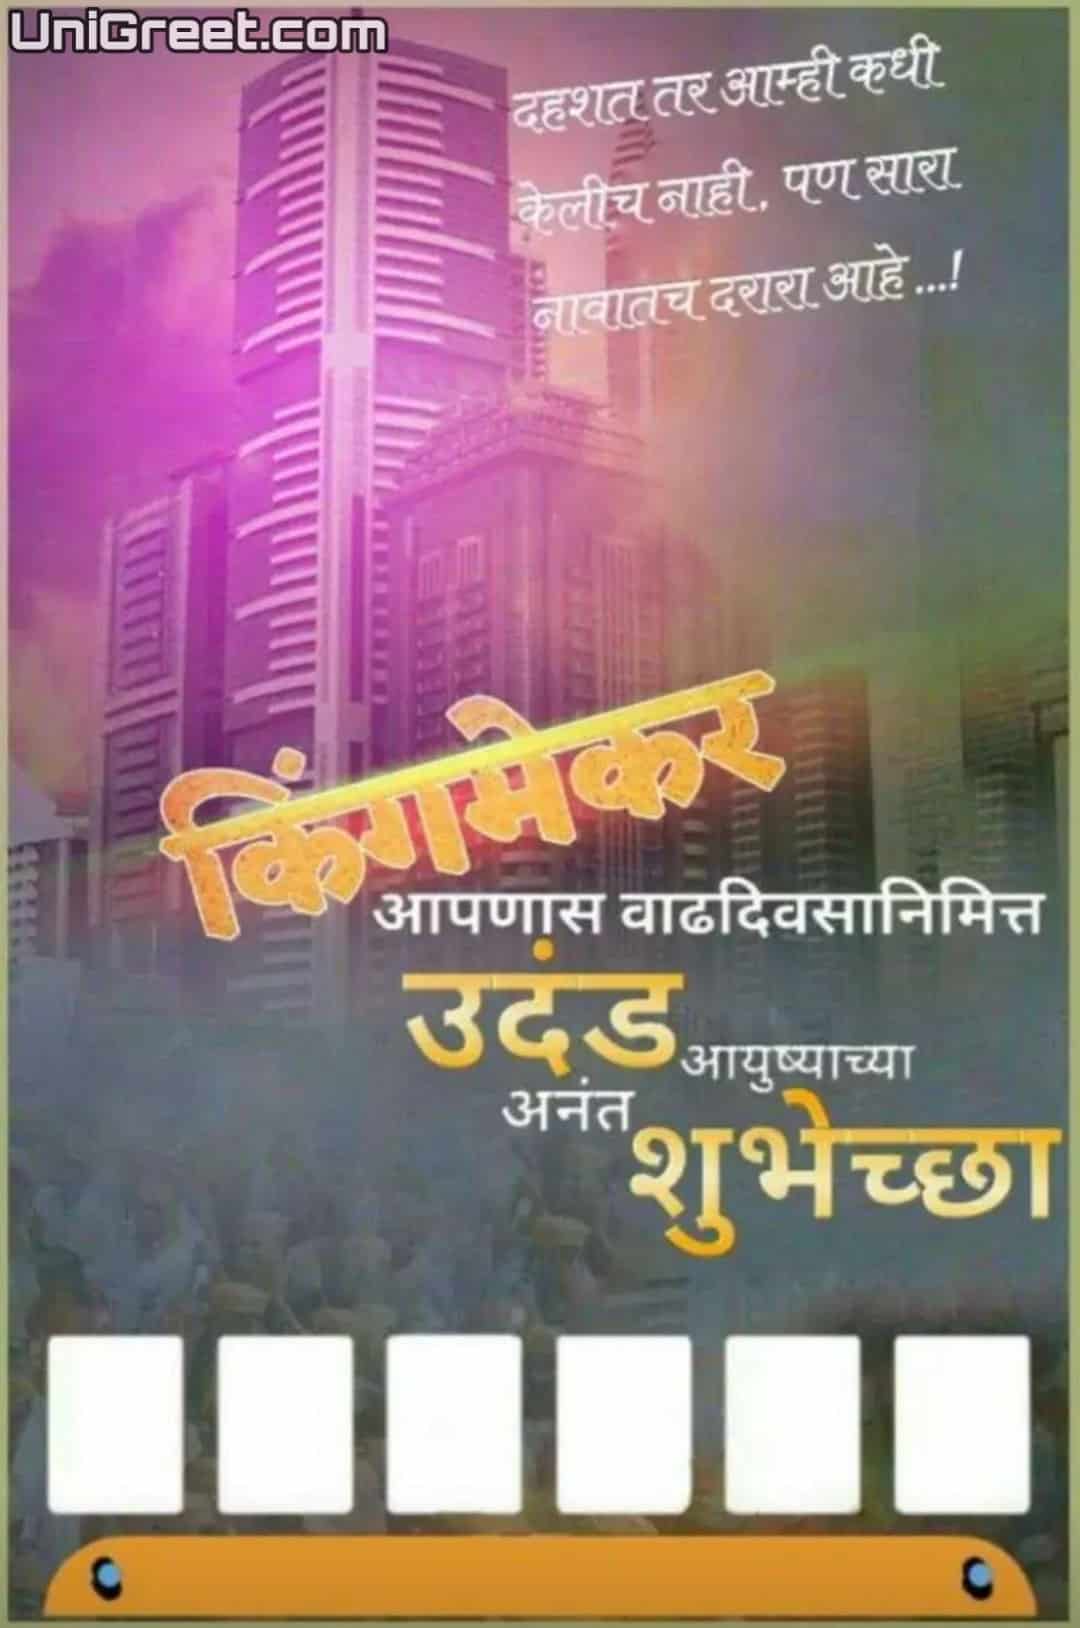 Best Politician Birthday Banner Marathi Design - Political Birthday Banner Background